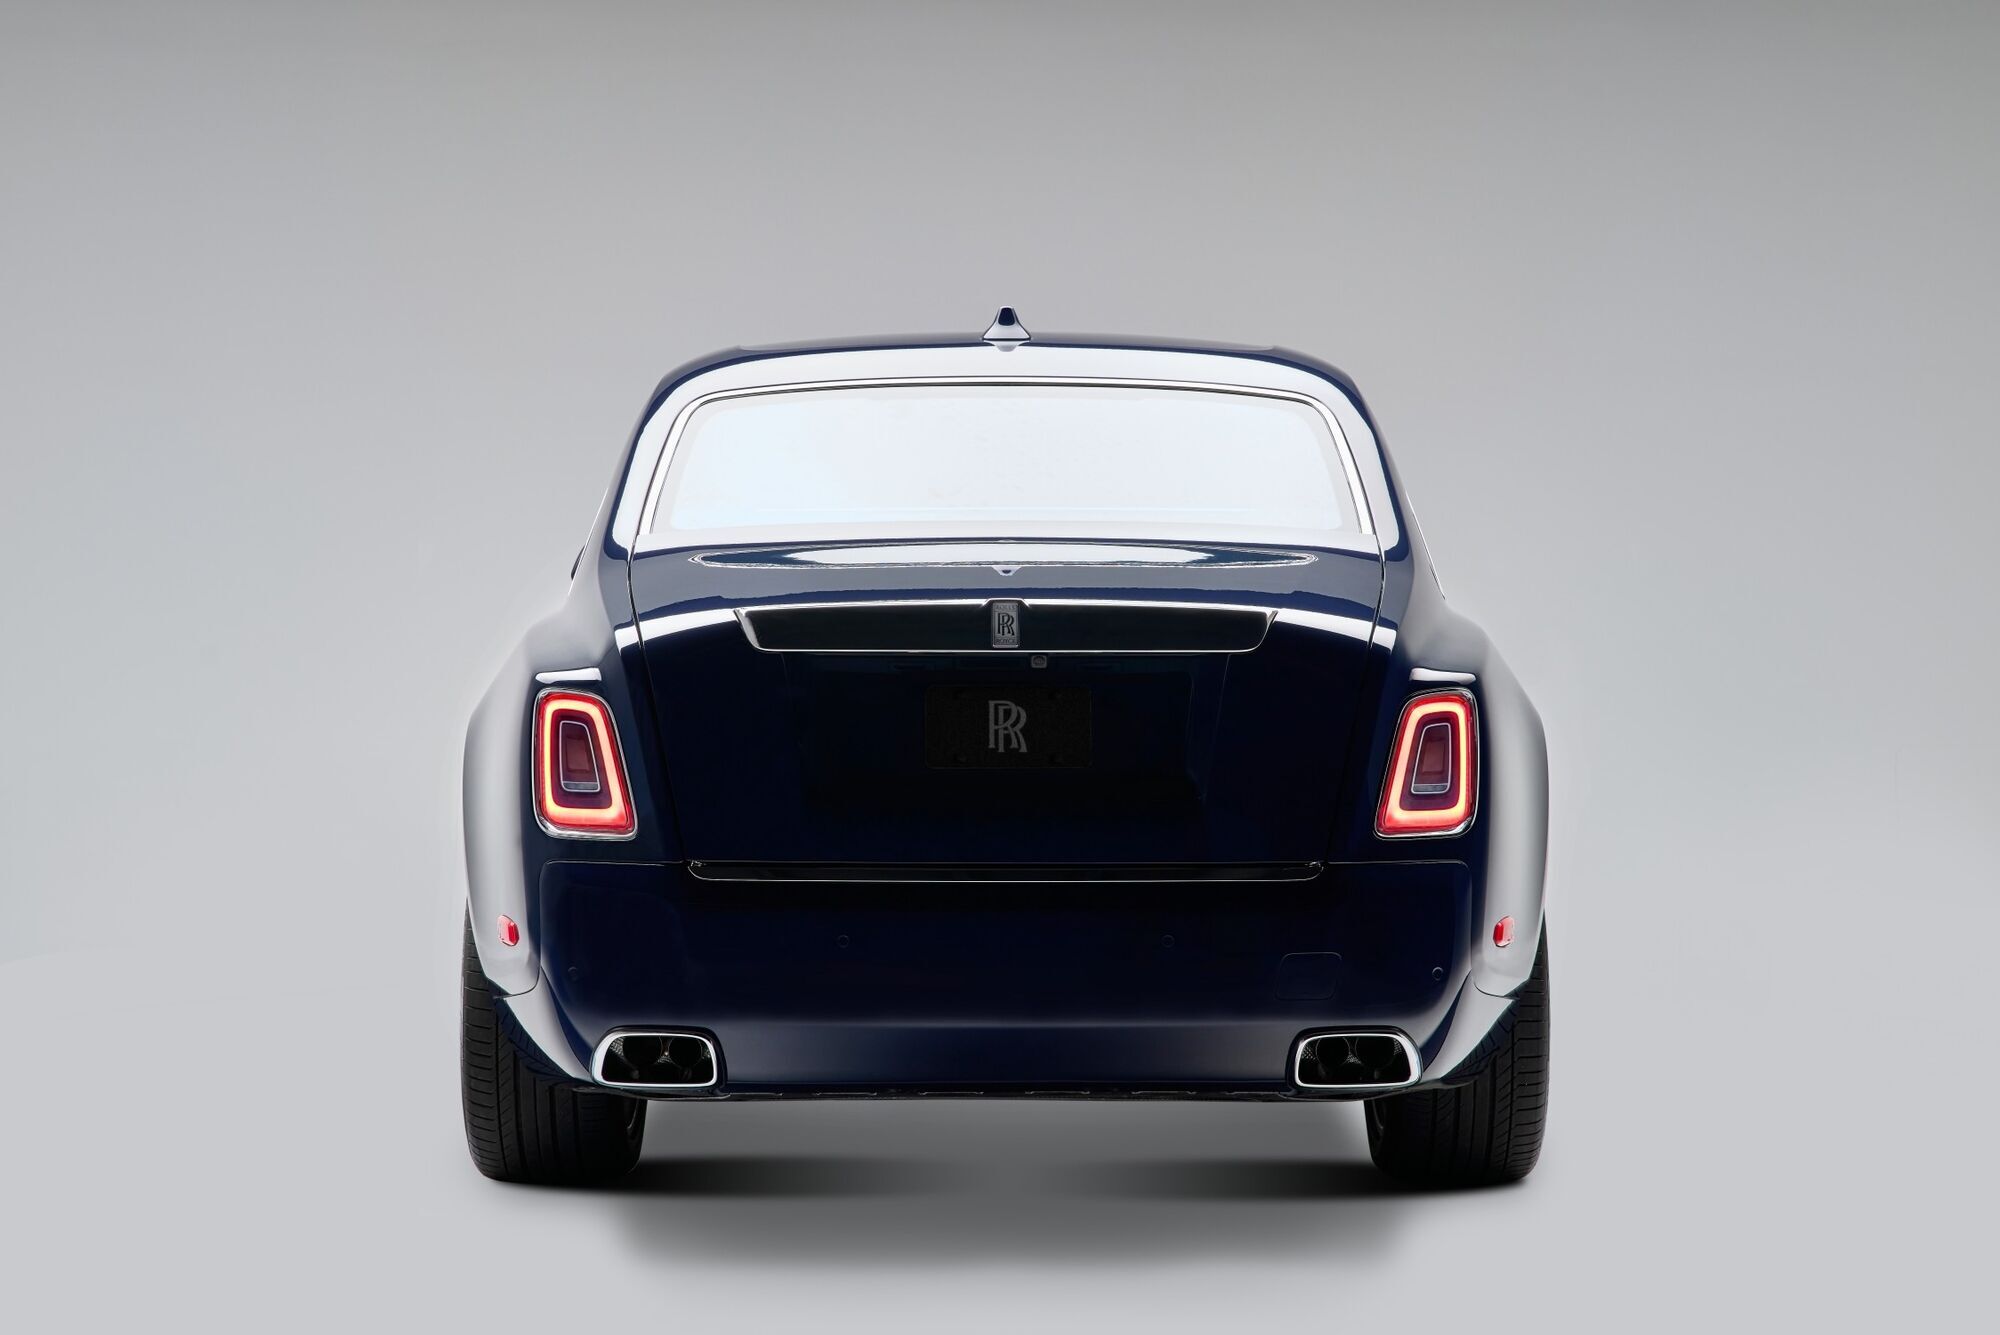 Задняя часть эксклюзивного Rolls-Royce Phantom